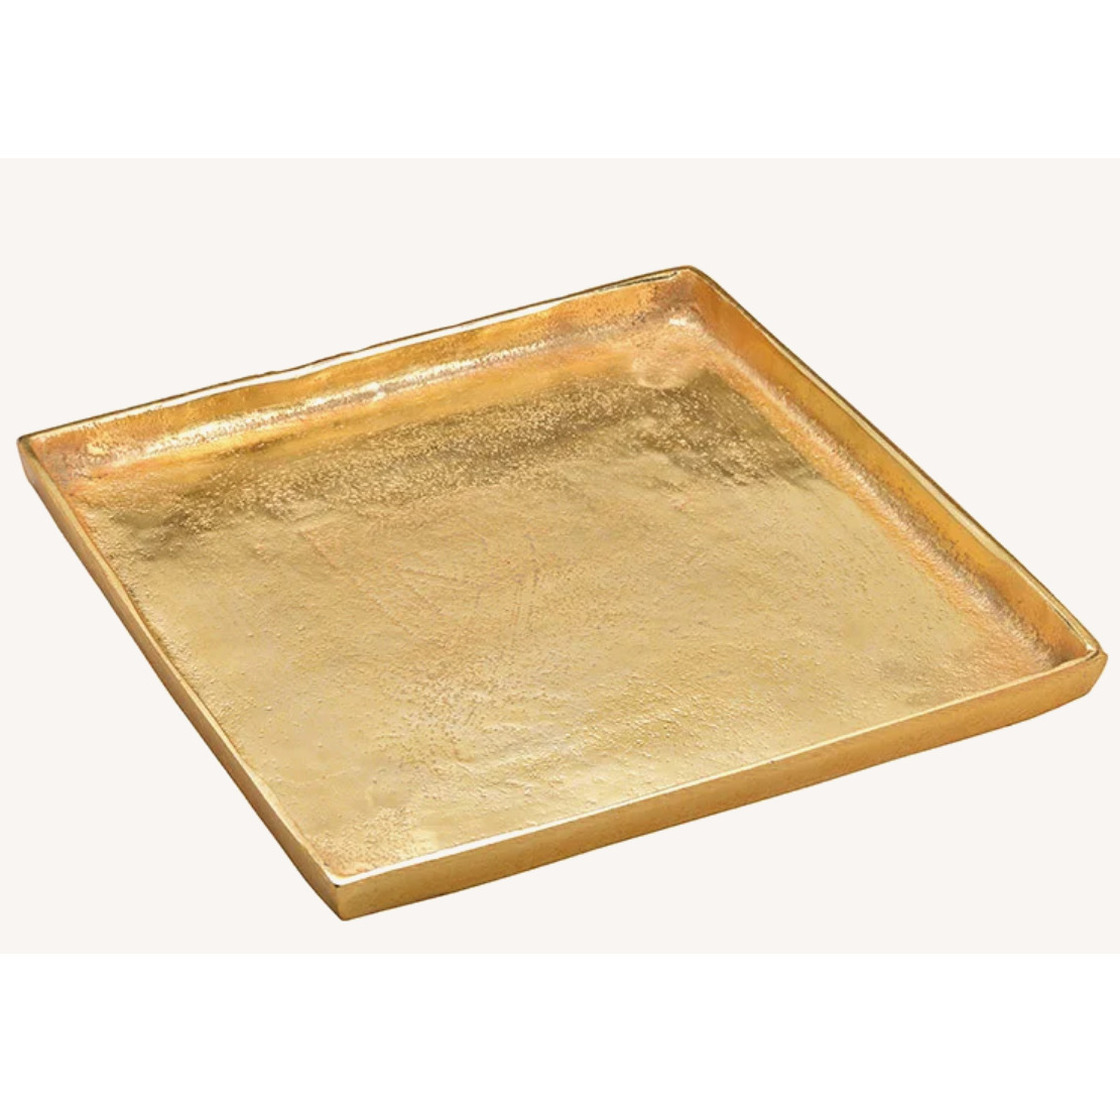 Vierkant kaarsenbord/kaarsenplateau goud van metaal 30 x 30 x 2 cm -